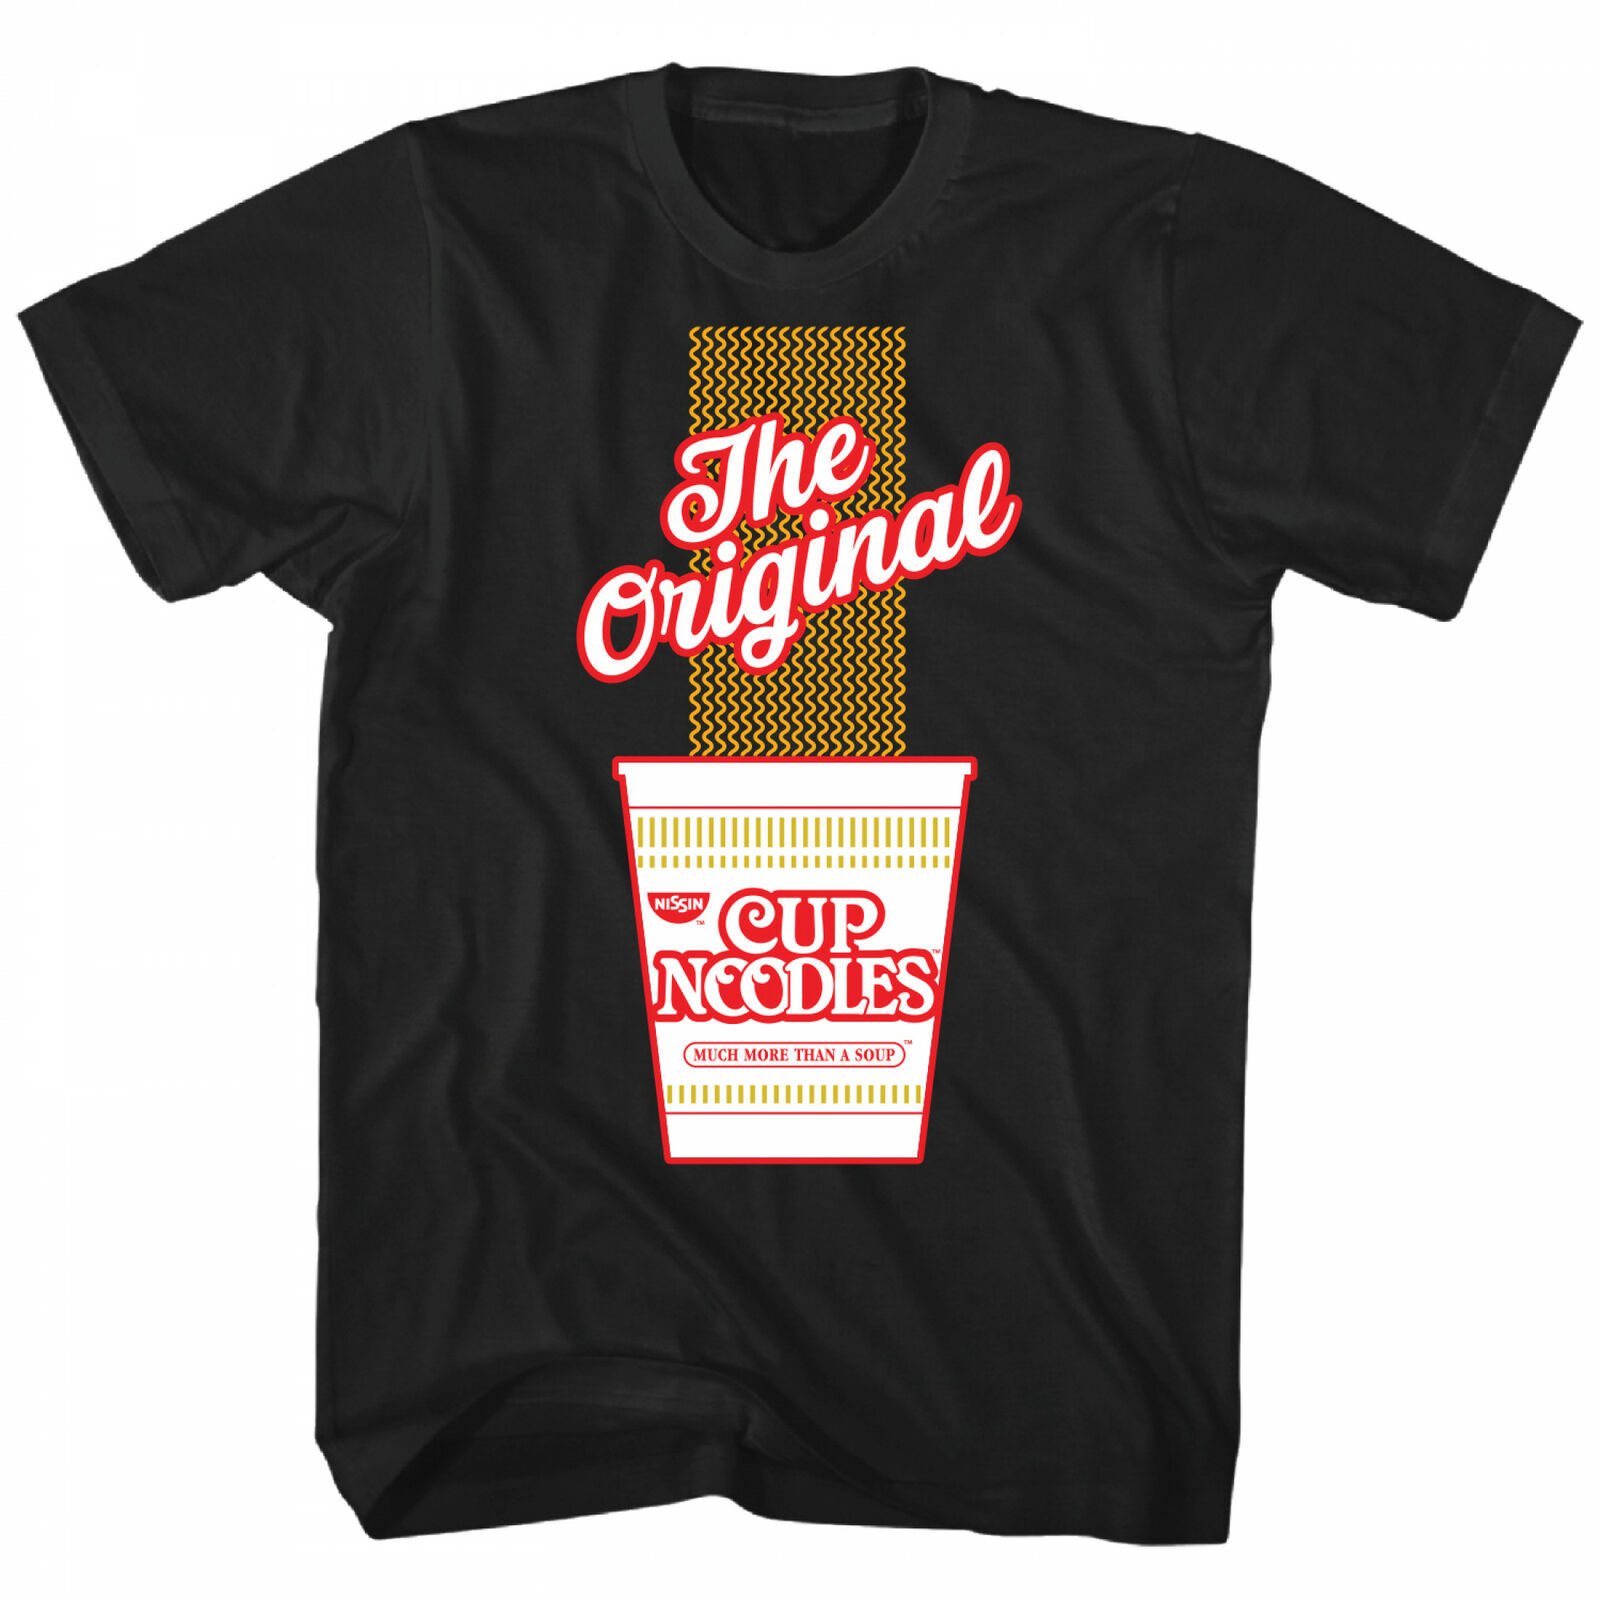 Рубашка лапша. Noodles t-Shirt. Cup Noodle t-Shirt. Send Noodles.